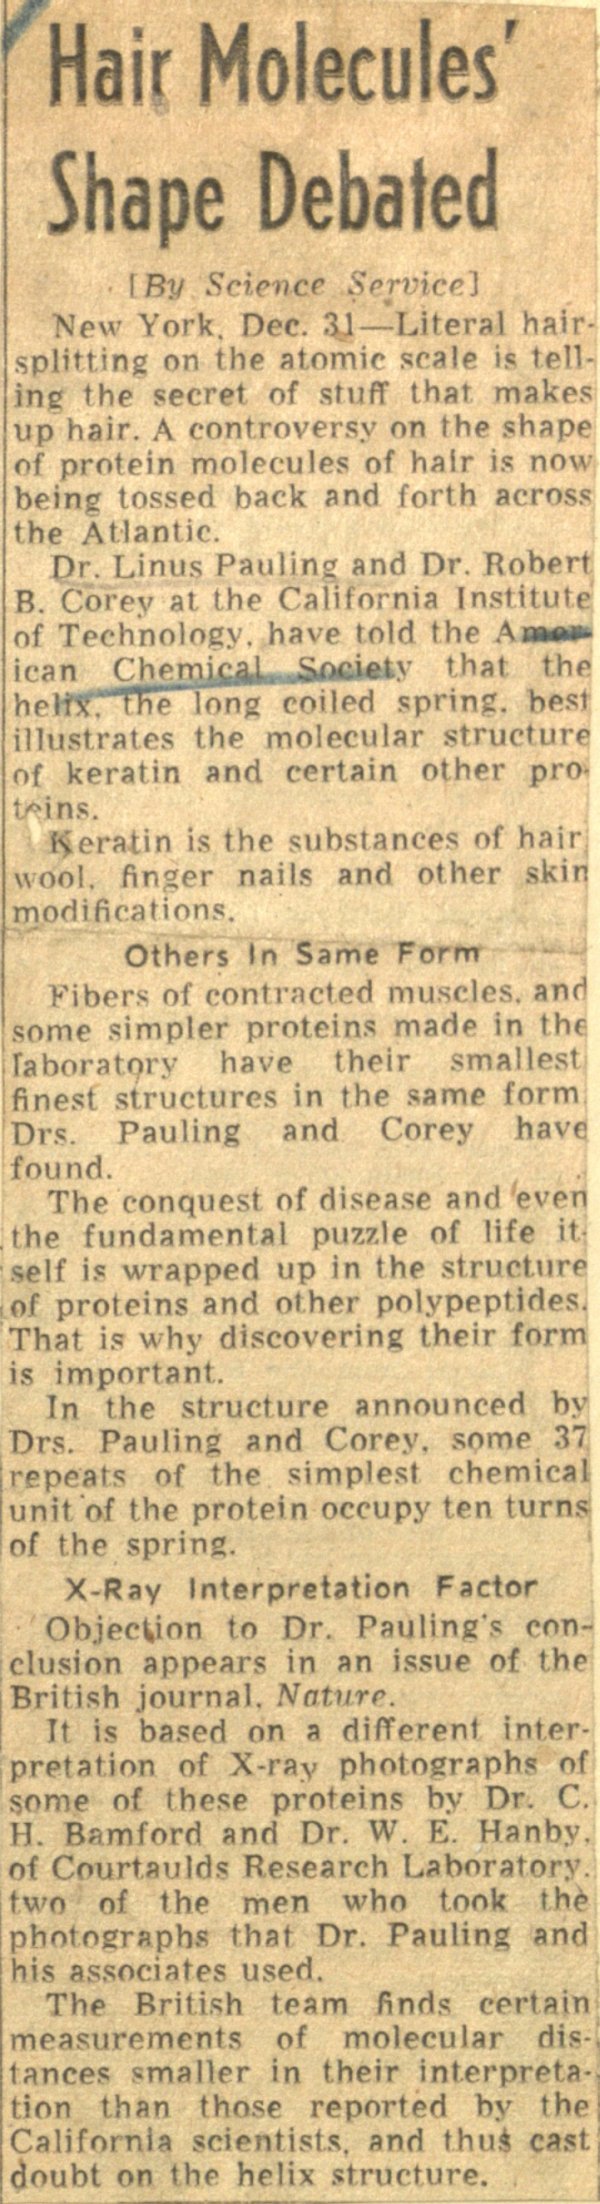 "Hair Molecules' Shape Debated." Page 1. December 30, 1951